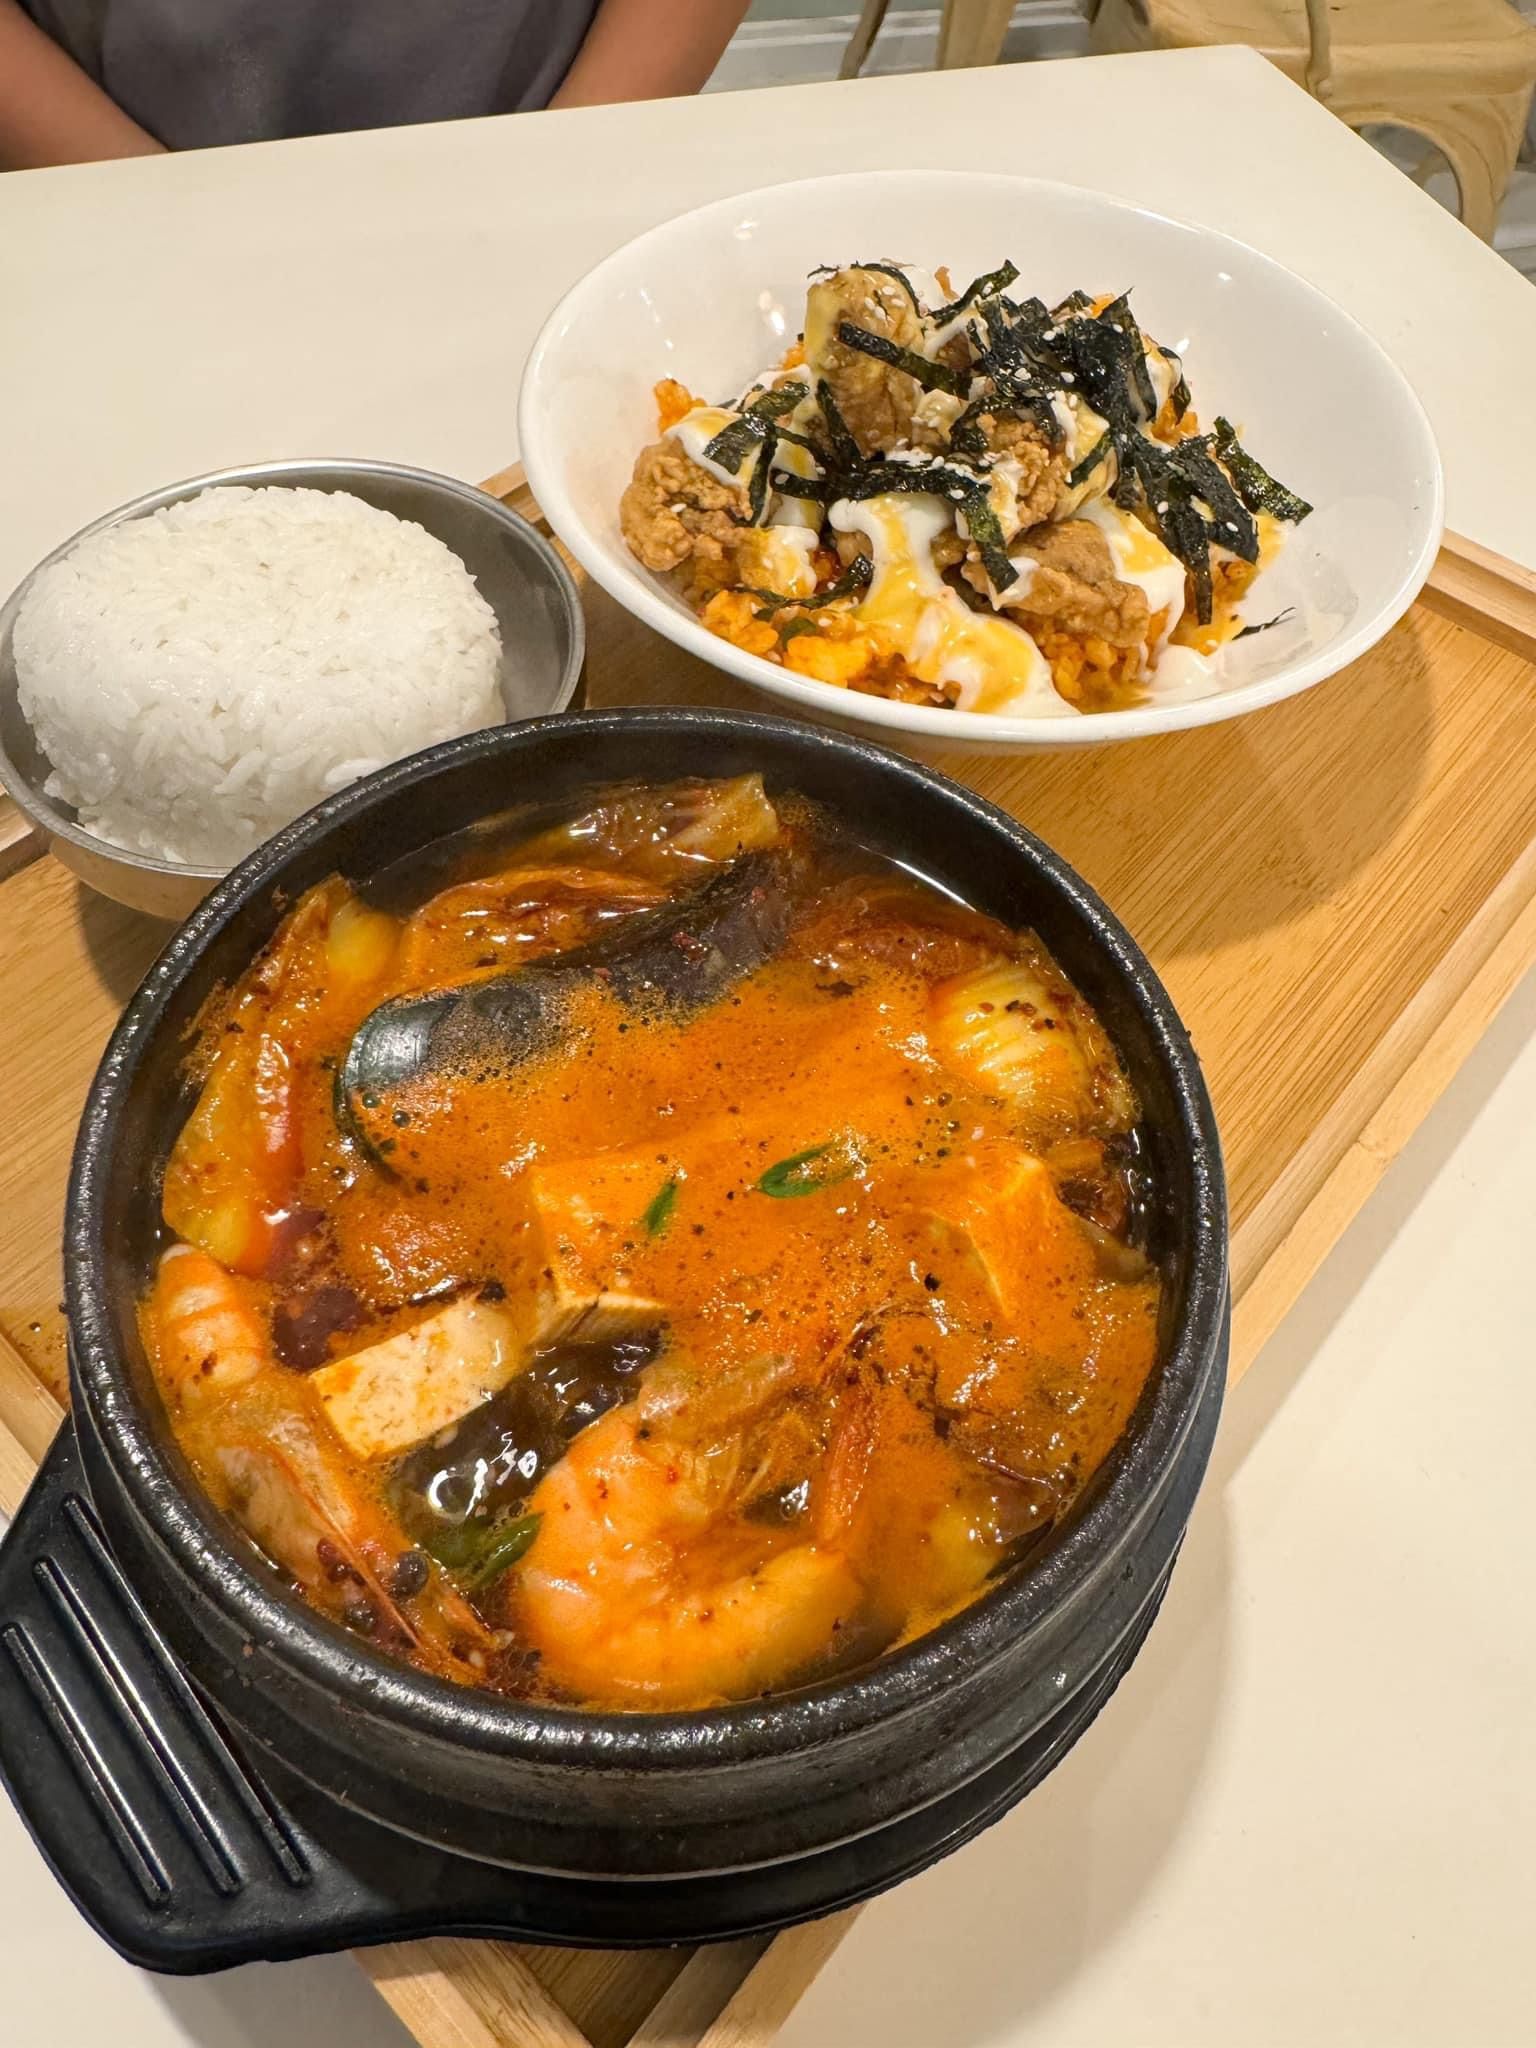 Seafood Jjigae 해물찌개